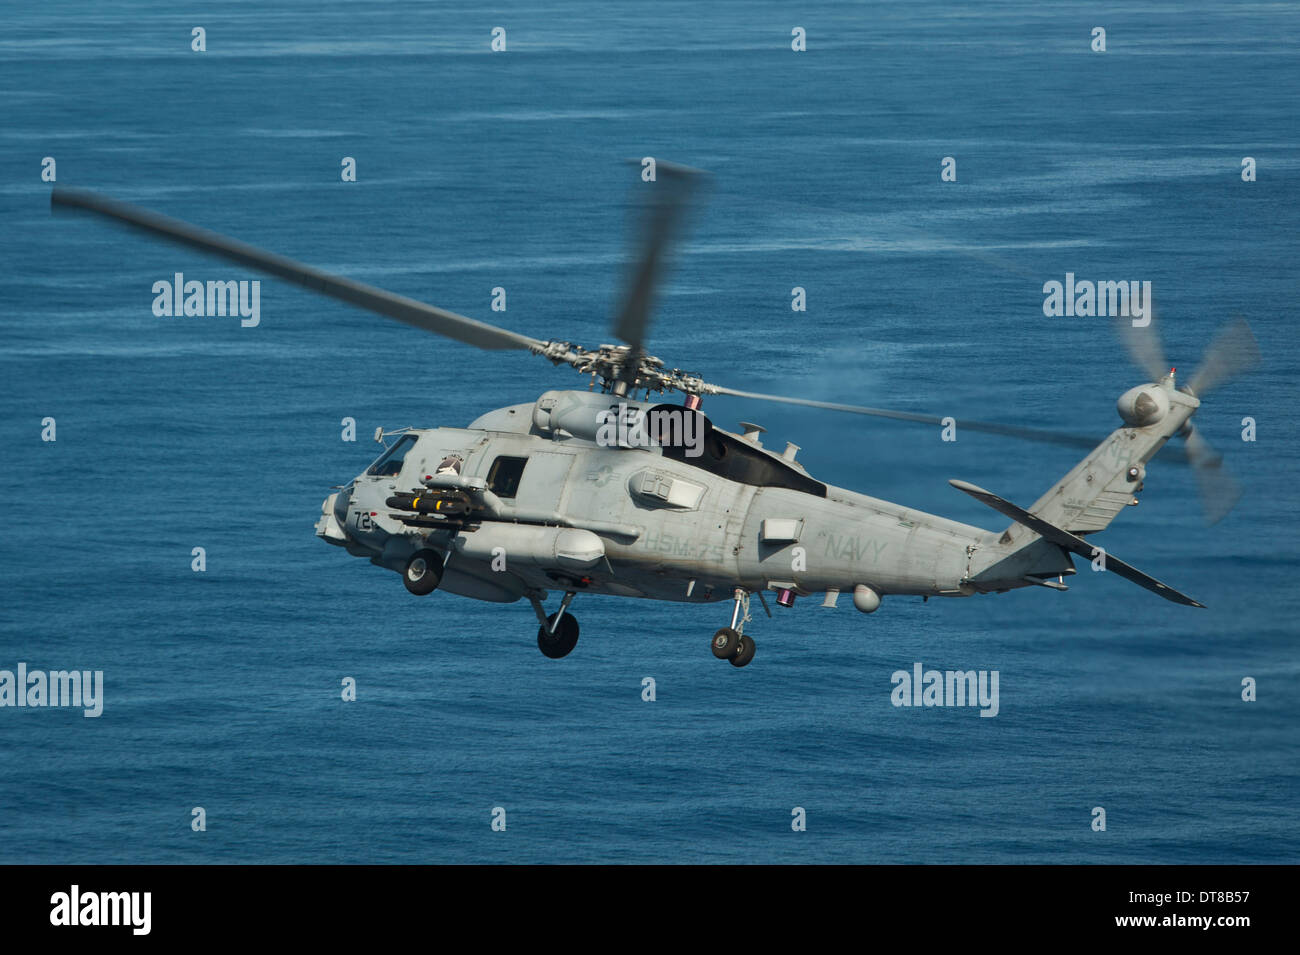 Sul mare del sud della Cina, 18 maggio 2013 - Un MH-60R Sea Hawk elicottero manovre sul Mare della Cina del Sud. Foto Stock